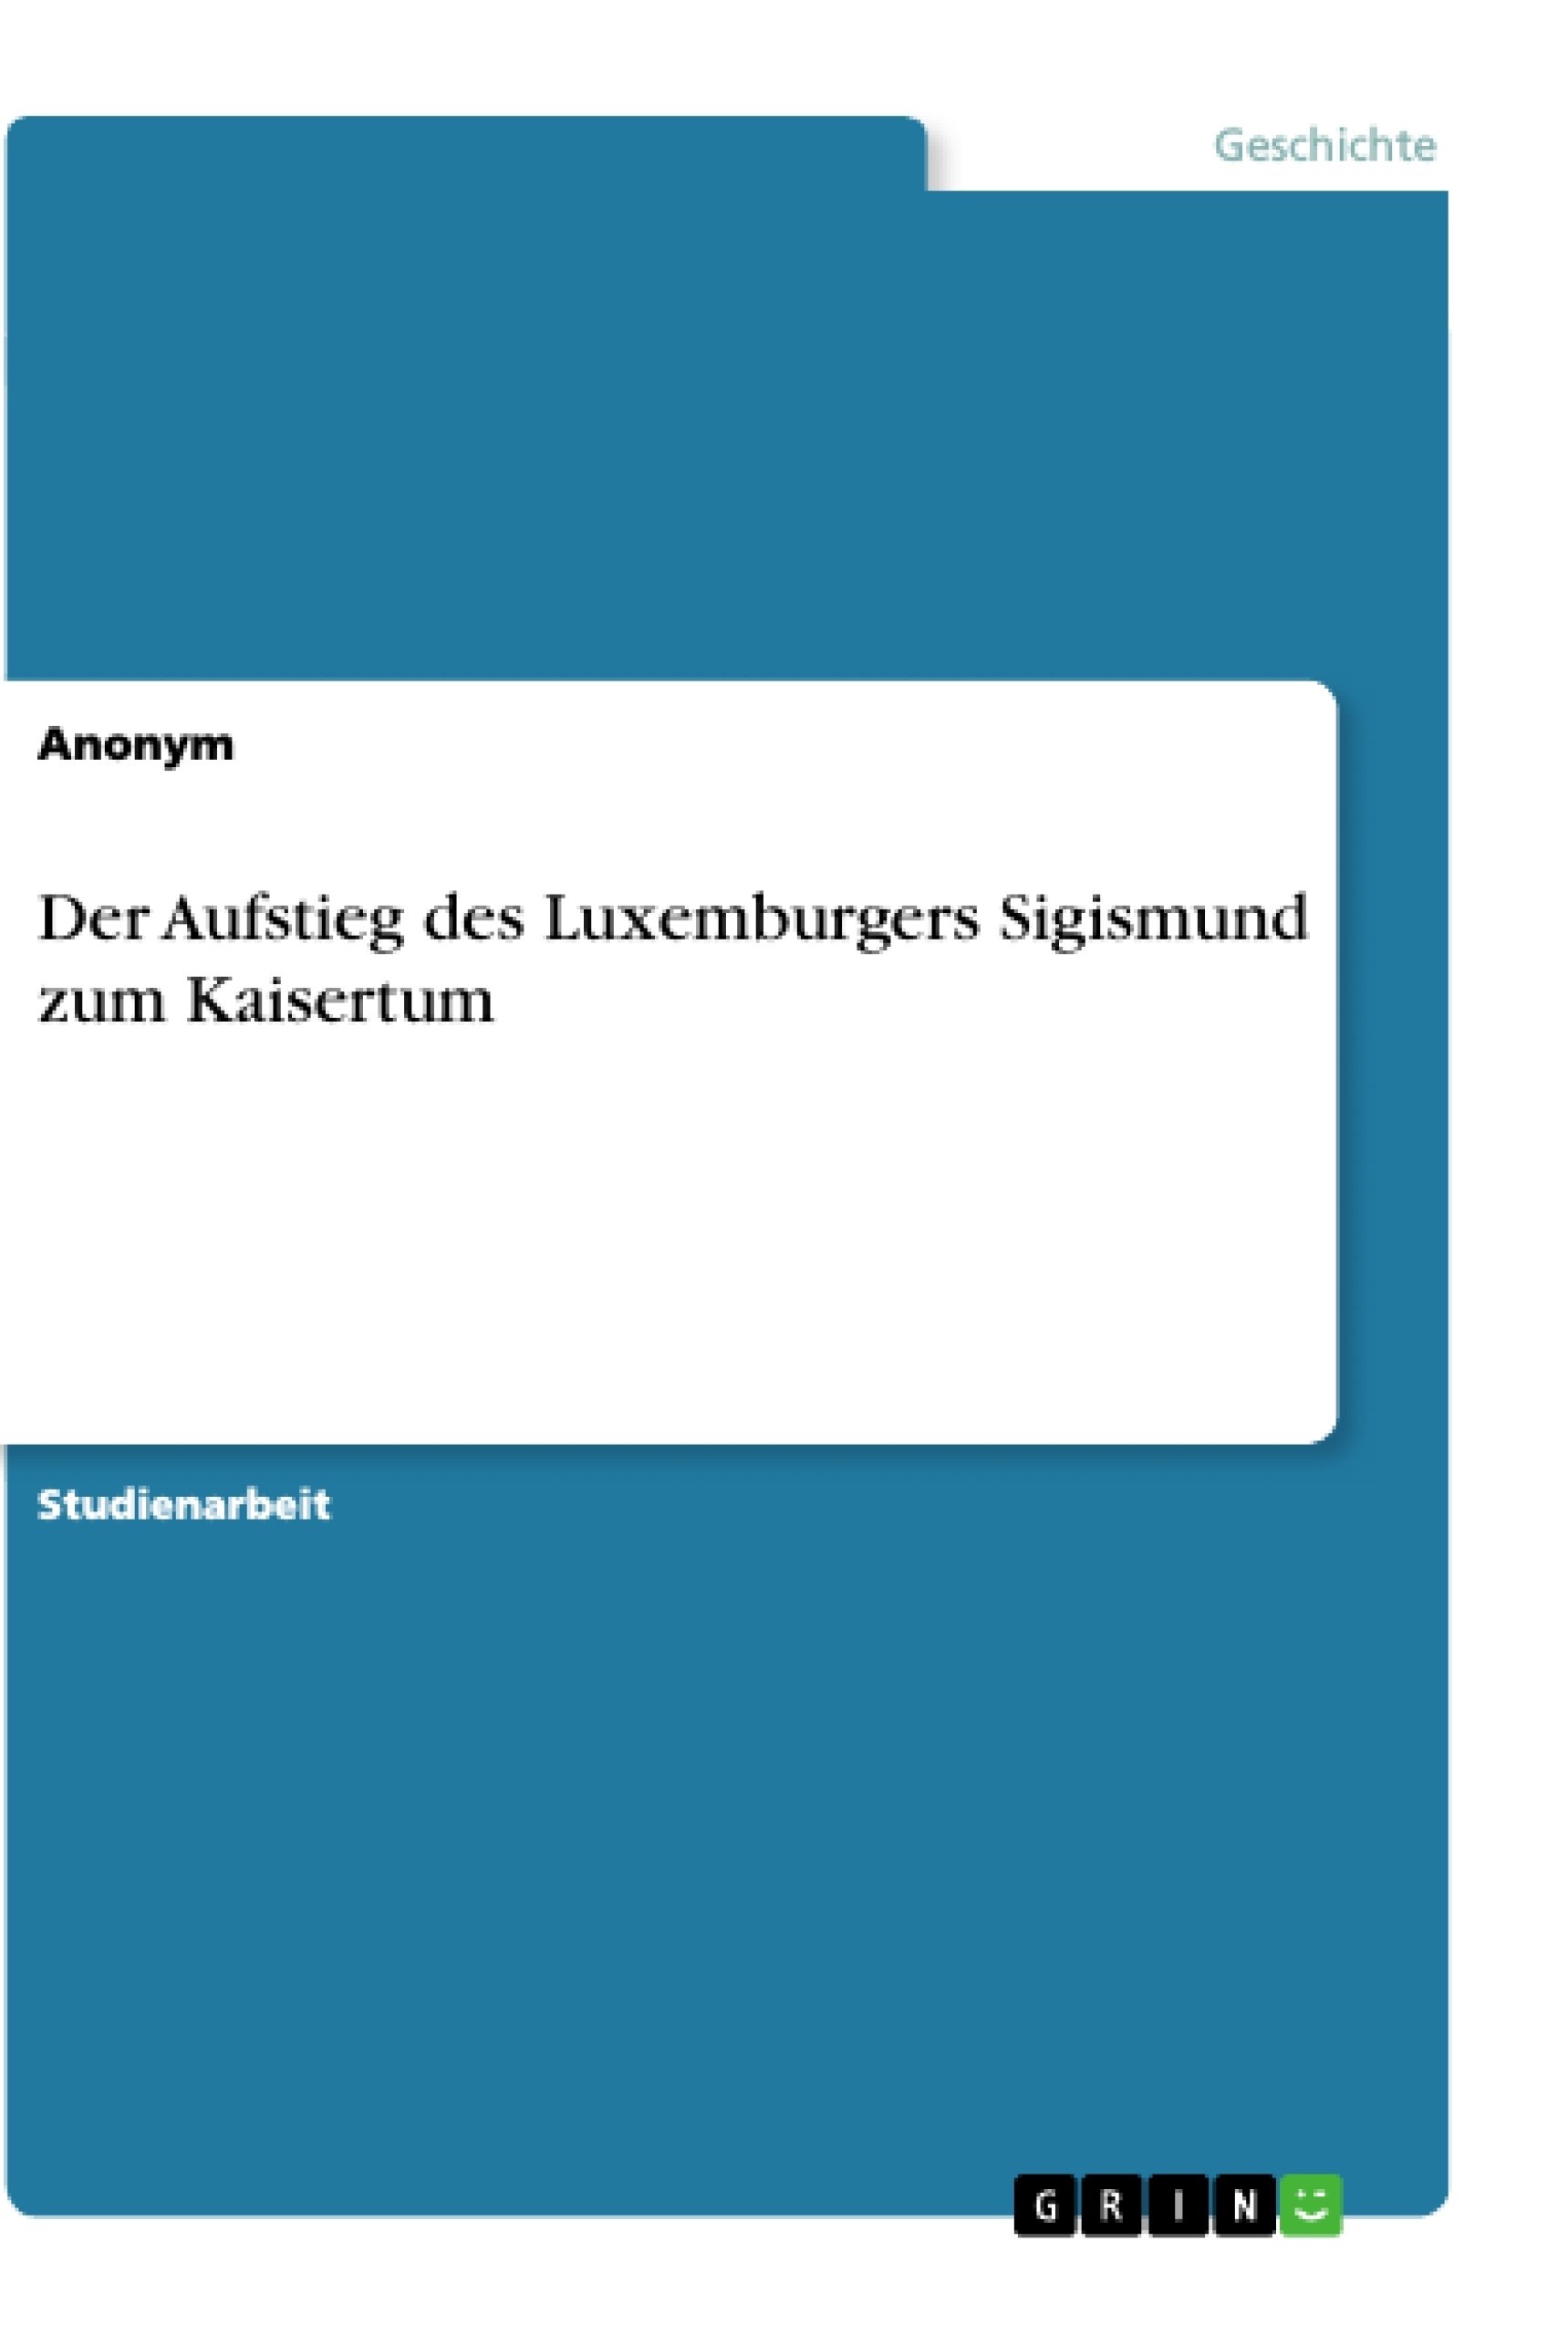 Title: Der Aufstieg des Luxemburgers Sigismund zum Kaisertum